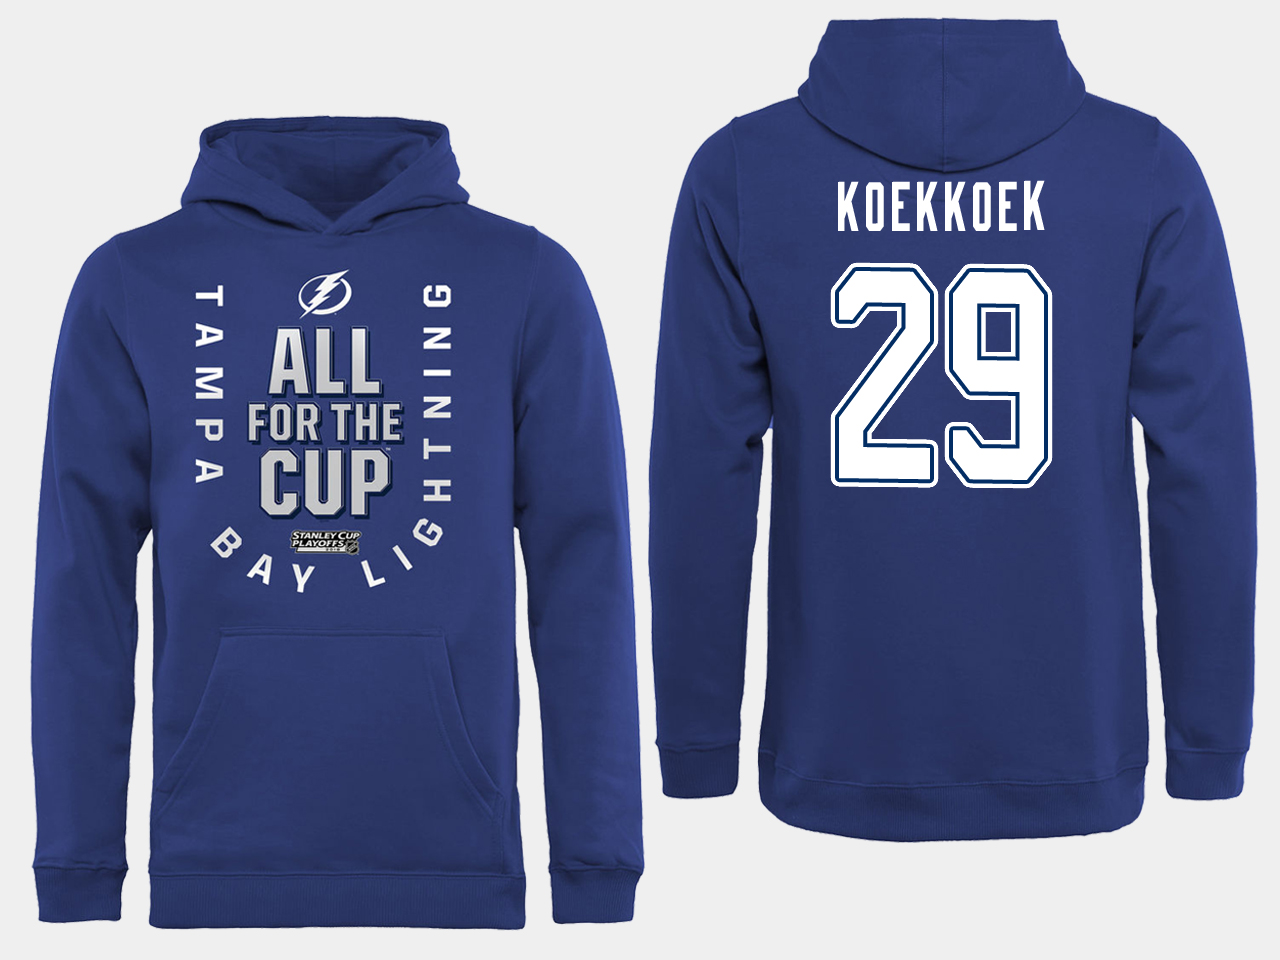 NHL Men adidas Tampa Bay Lightning #29 Koekkoek blue All for the Cup Hoodie->tampa bay lightning->NHL Jersey